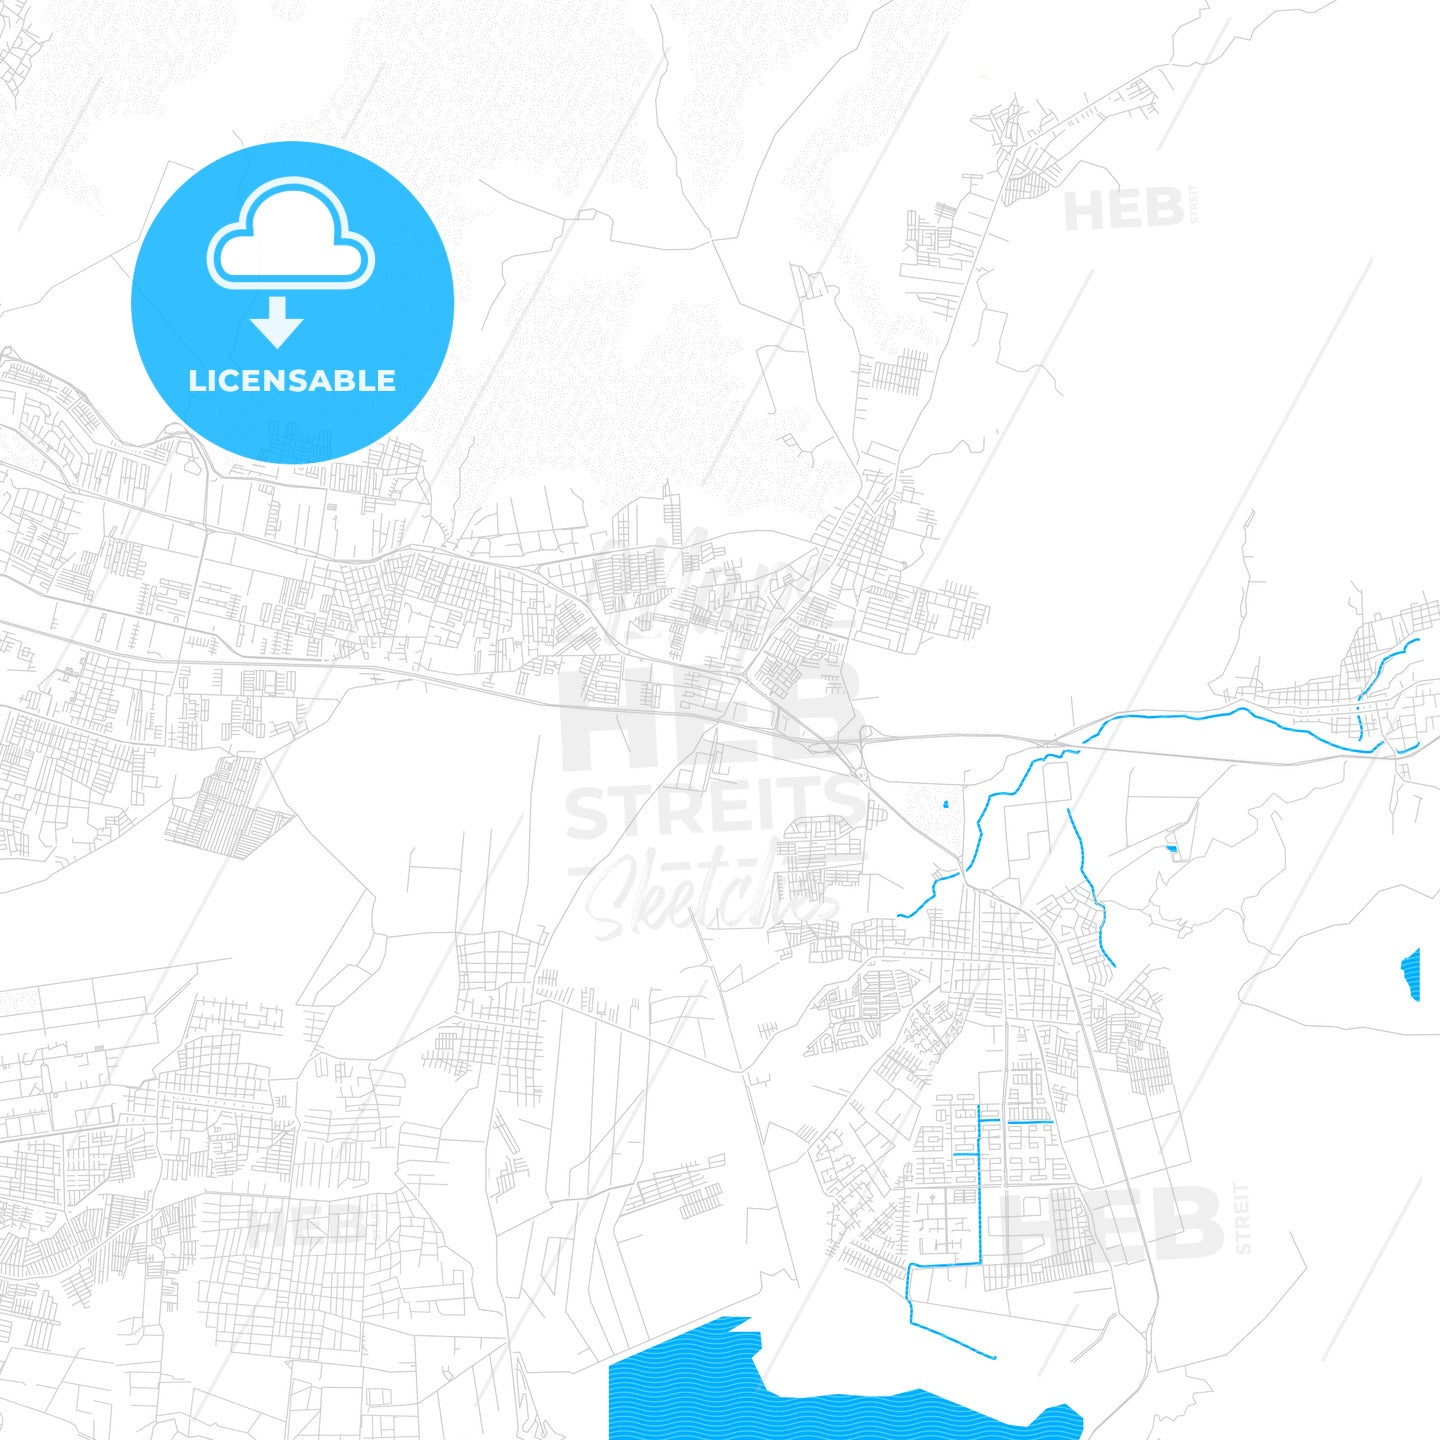 Turmero, Venezuela PDF vector map with water in focus